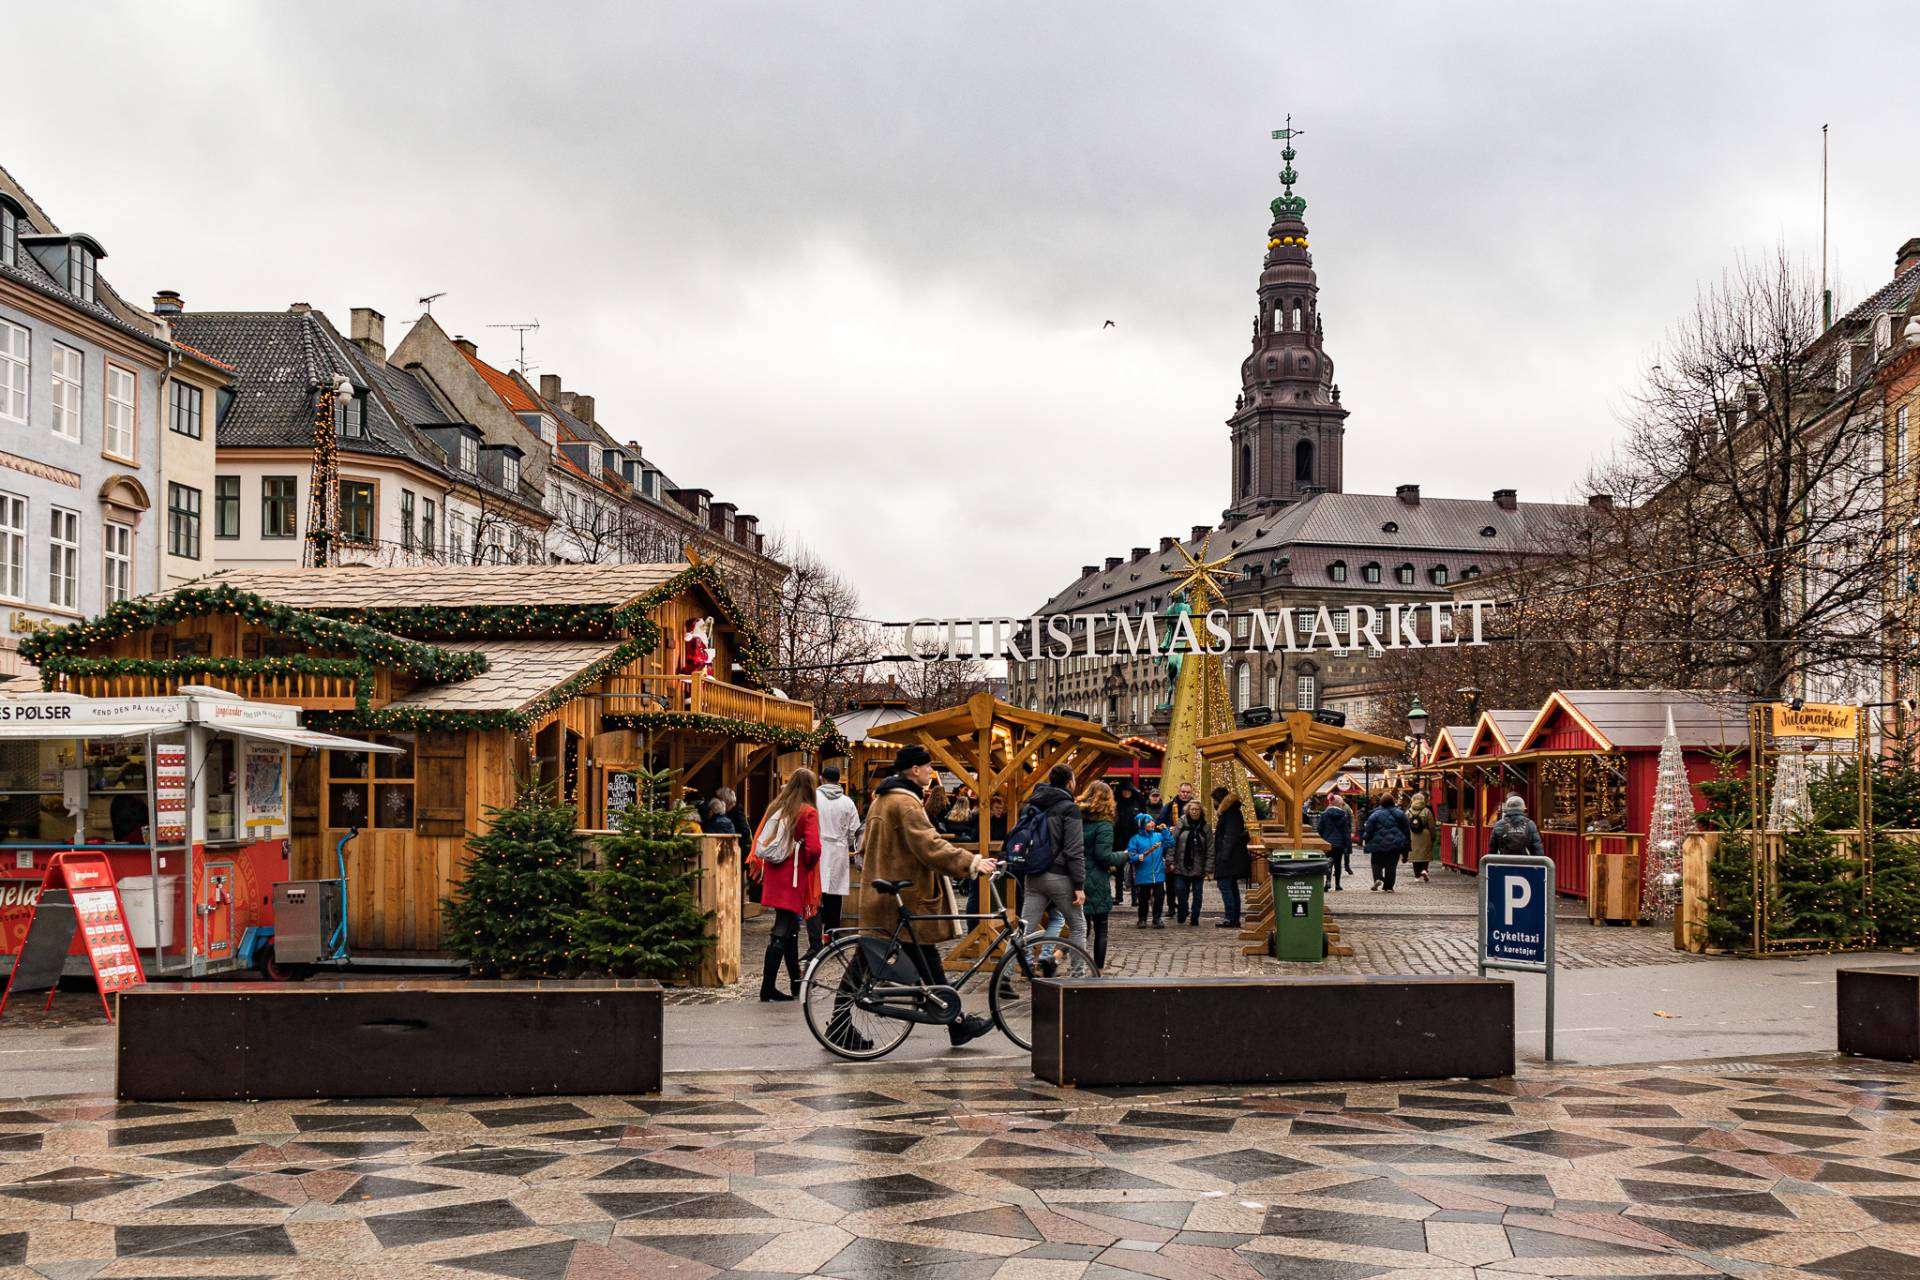 διακοπές-στη-Κοπεγχάγη-Χριστουγεννιάτικοι-προορισμοί-